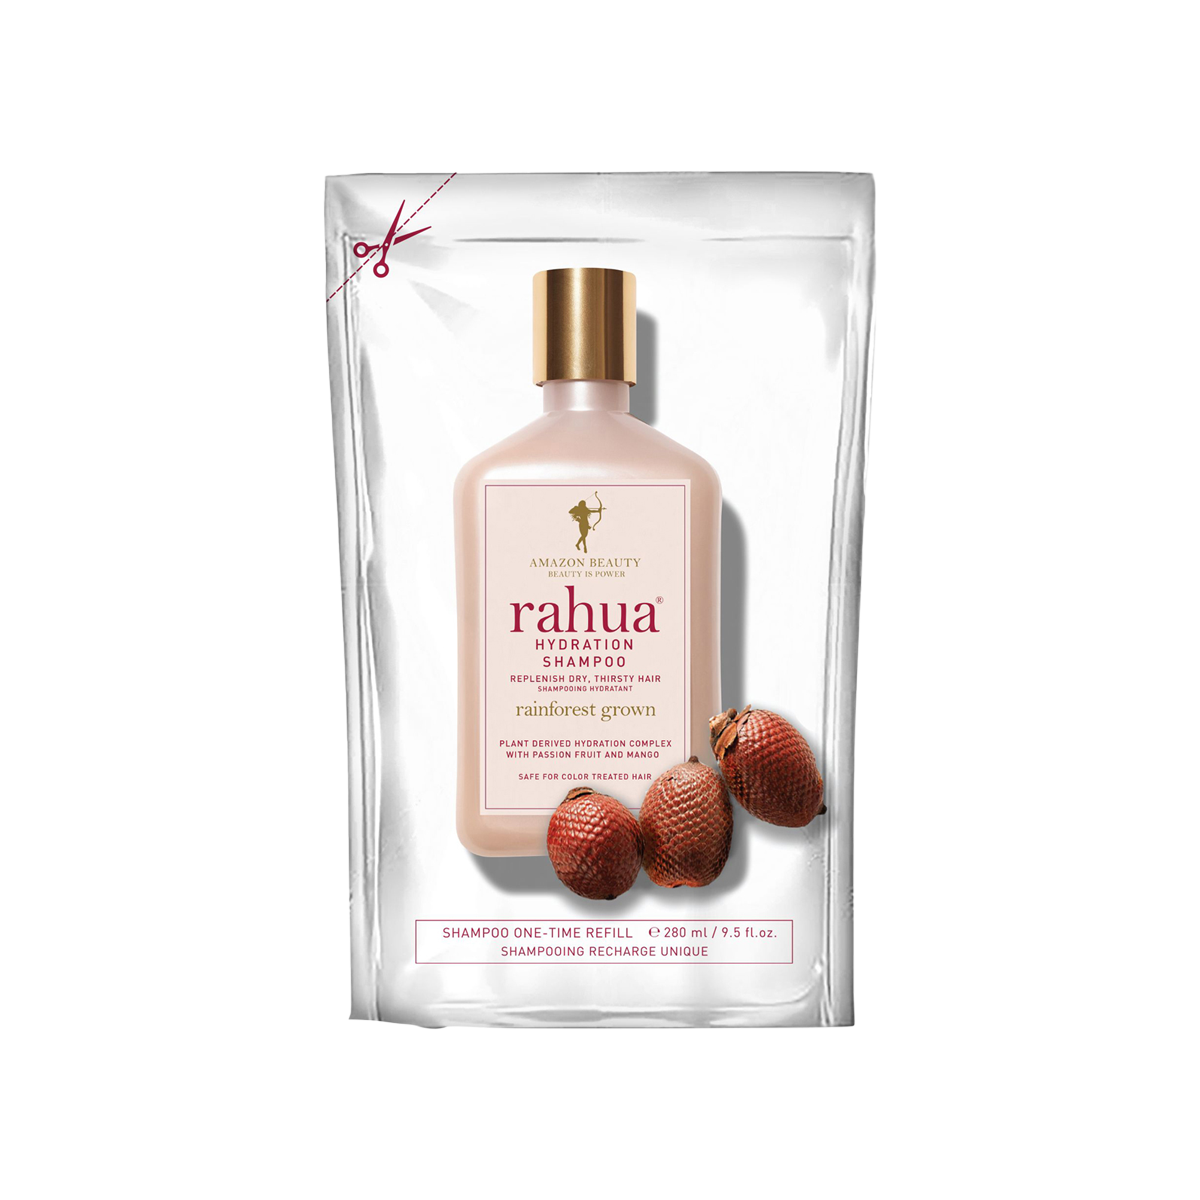 Rahua - Hydration Shampoo Refill